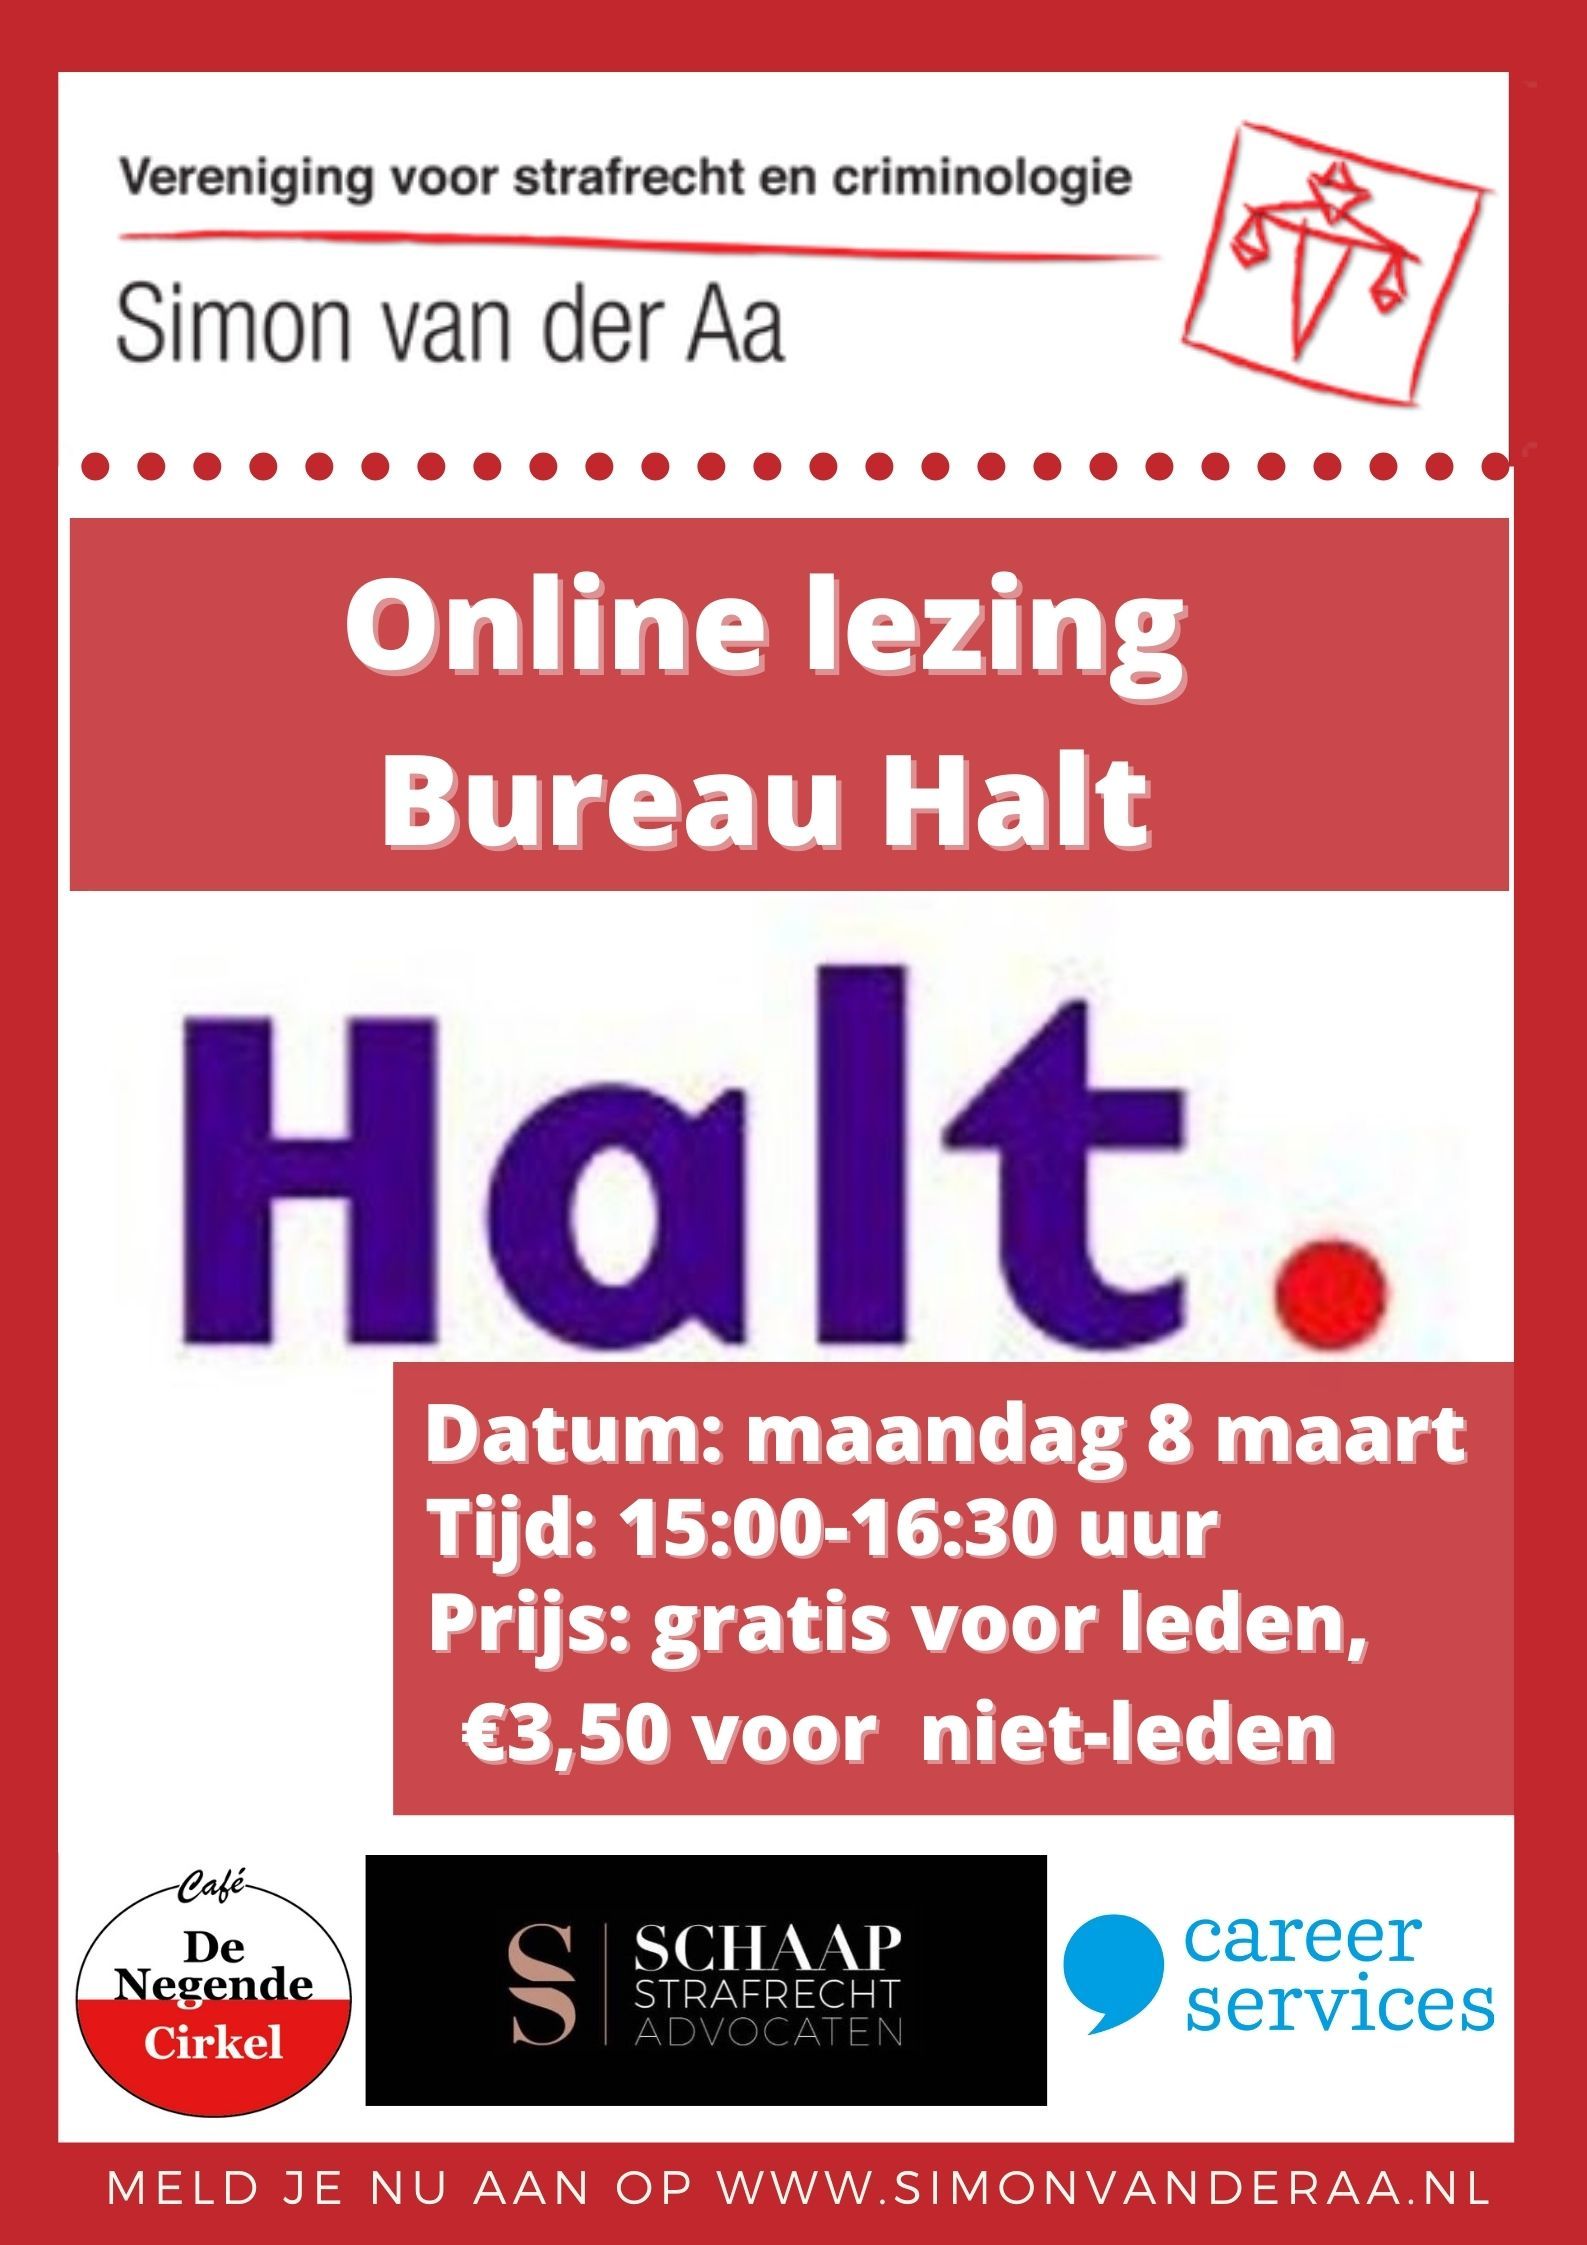 Online lezing Bureau Halt